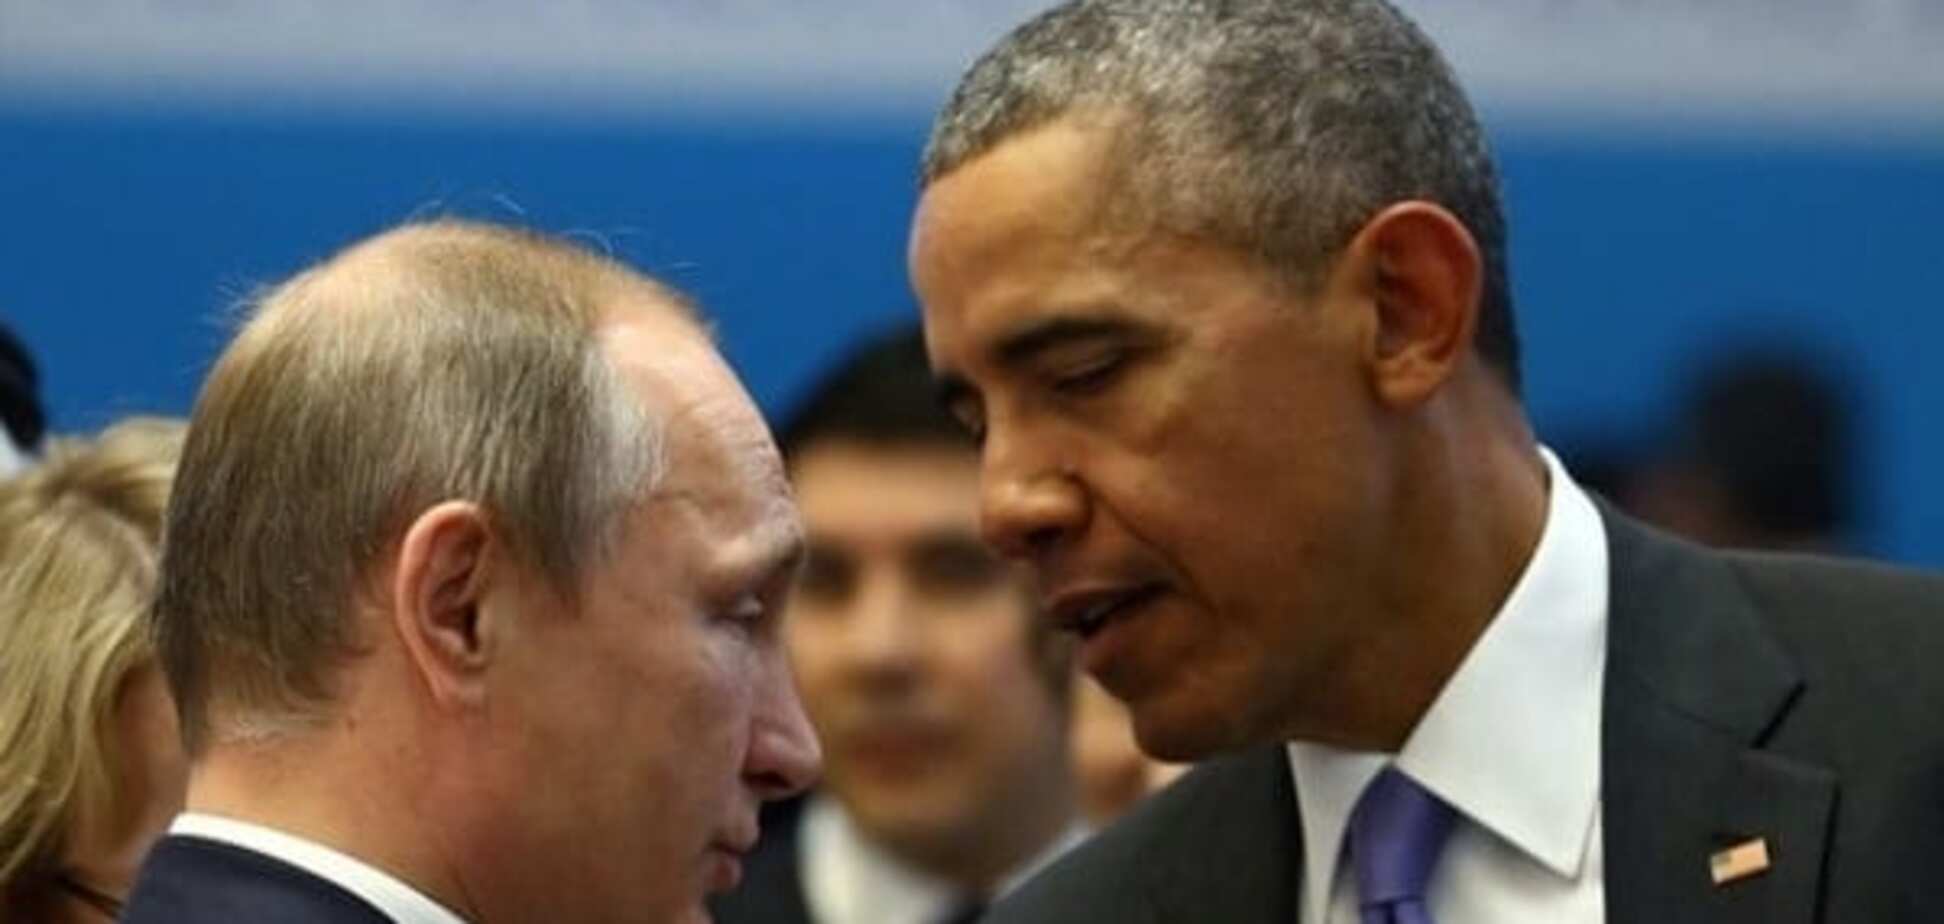 Обама дав 'зелене світло' для Путіна на продовження конфлікту в Україні - Воробйов